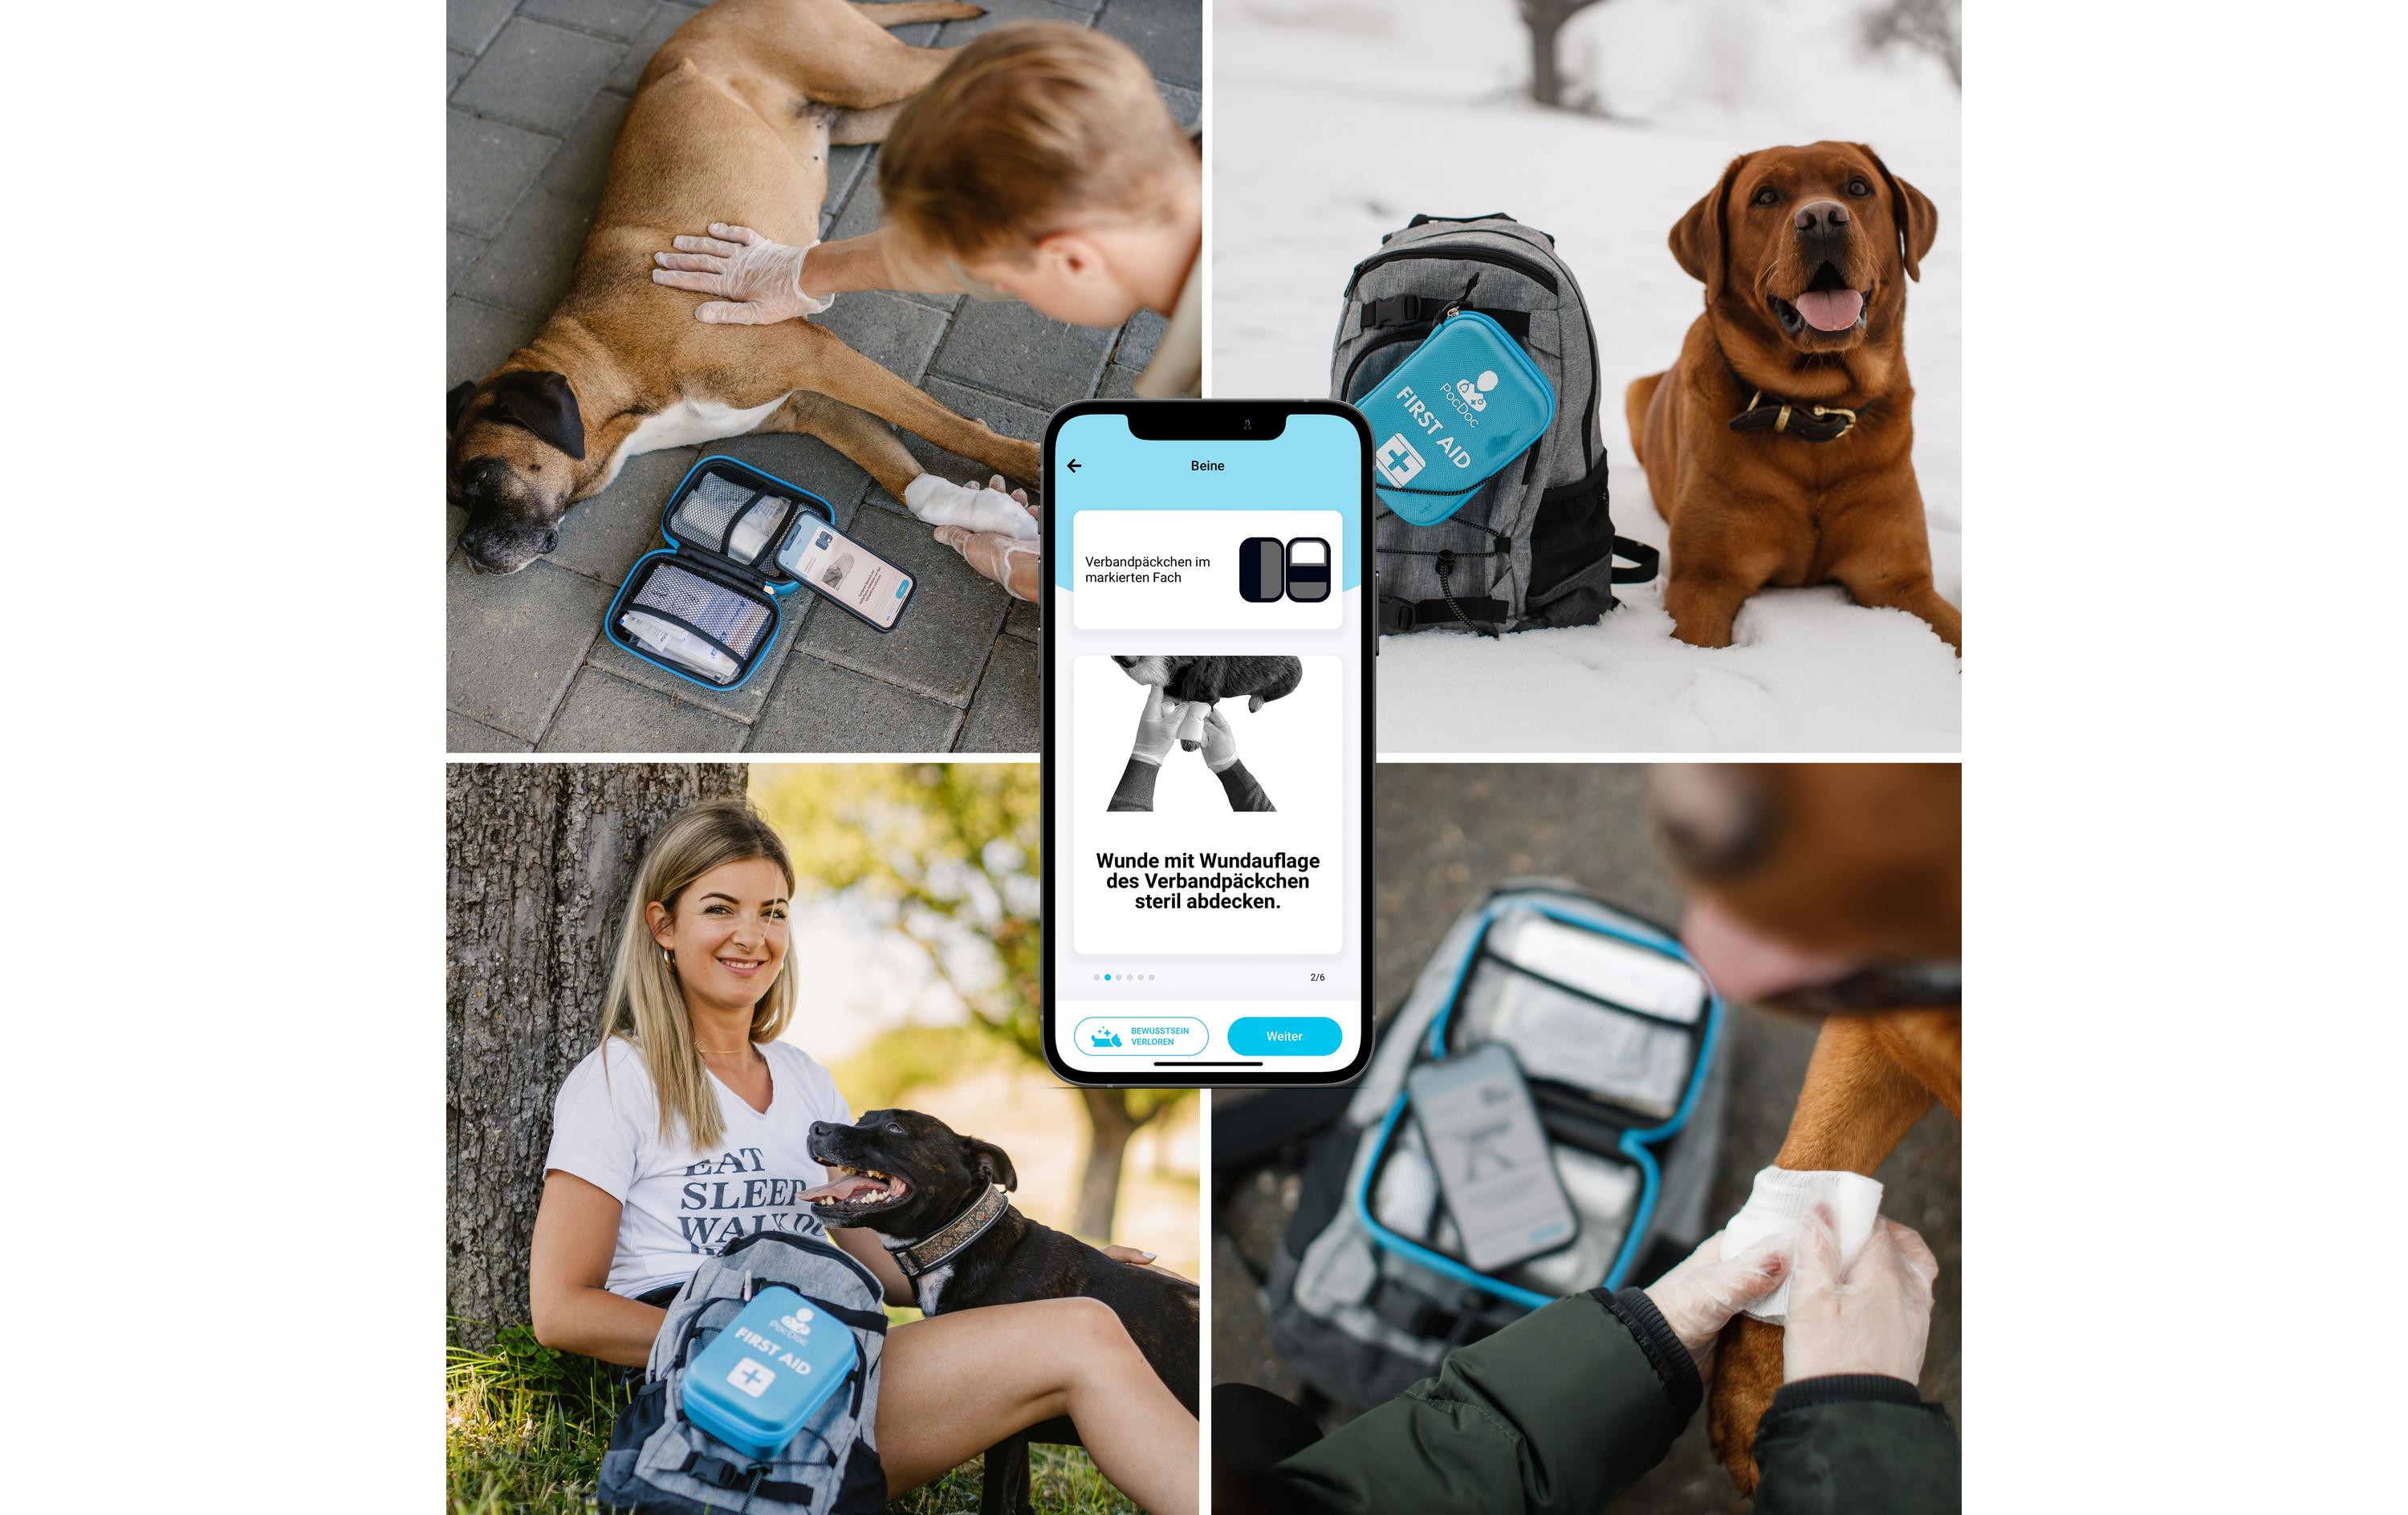 Pocdoc Tier-Erste-Hilfe-Set Pet Connect